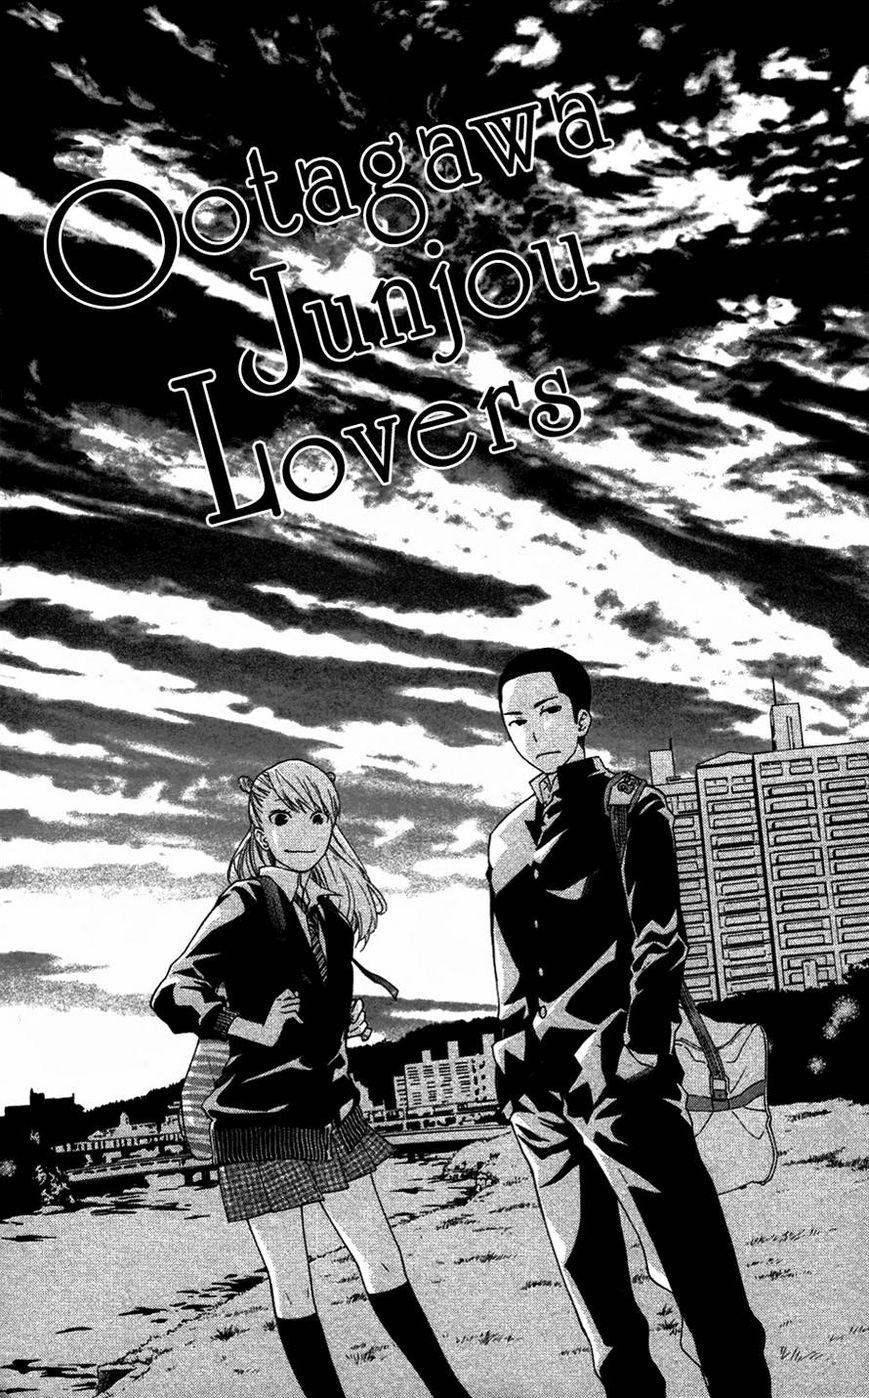 Ootagawa Junjou Lovers 4